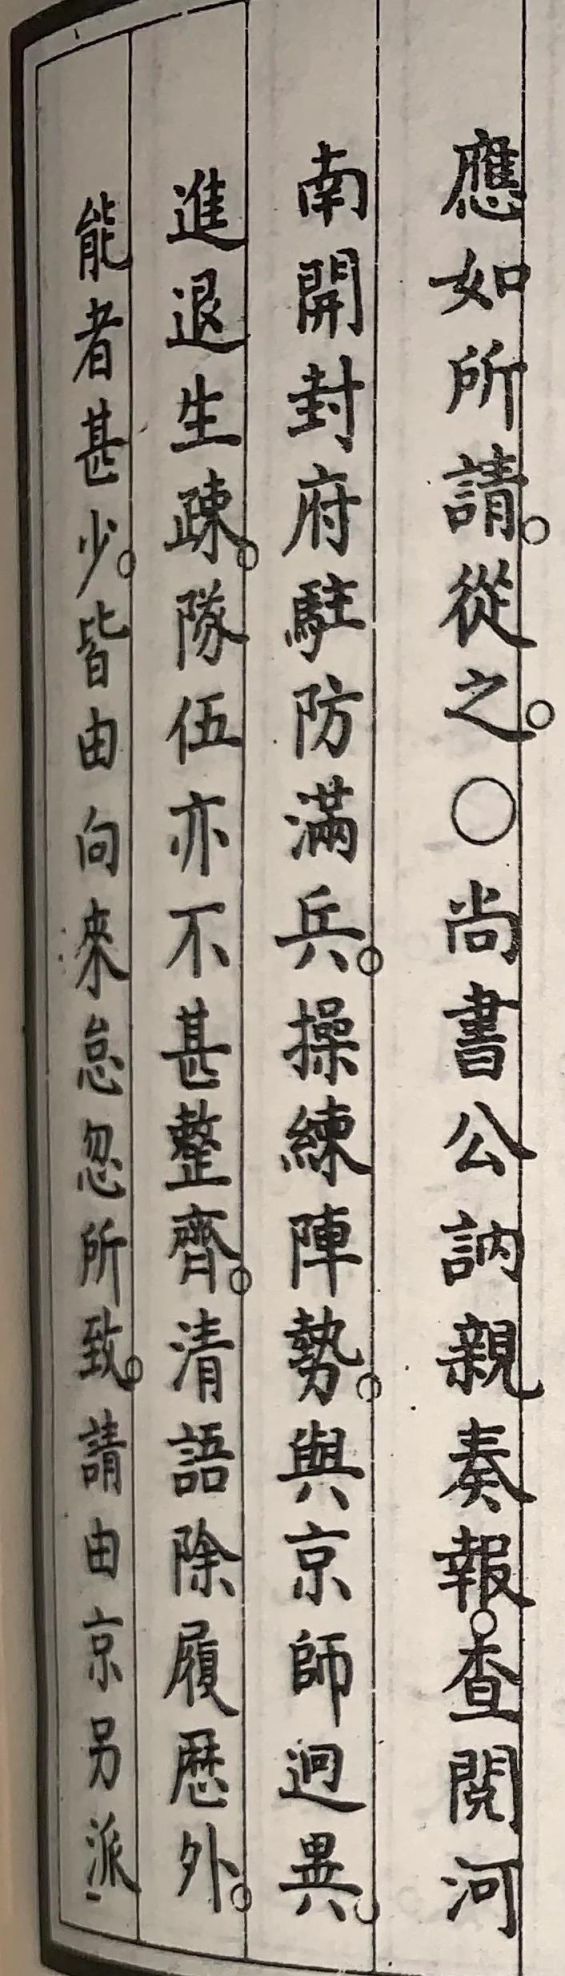 清朝皇帝上朝时有满语翻译在场进行满语汉语互译吗？